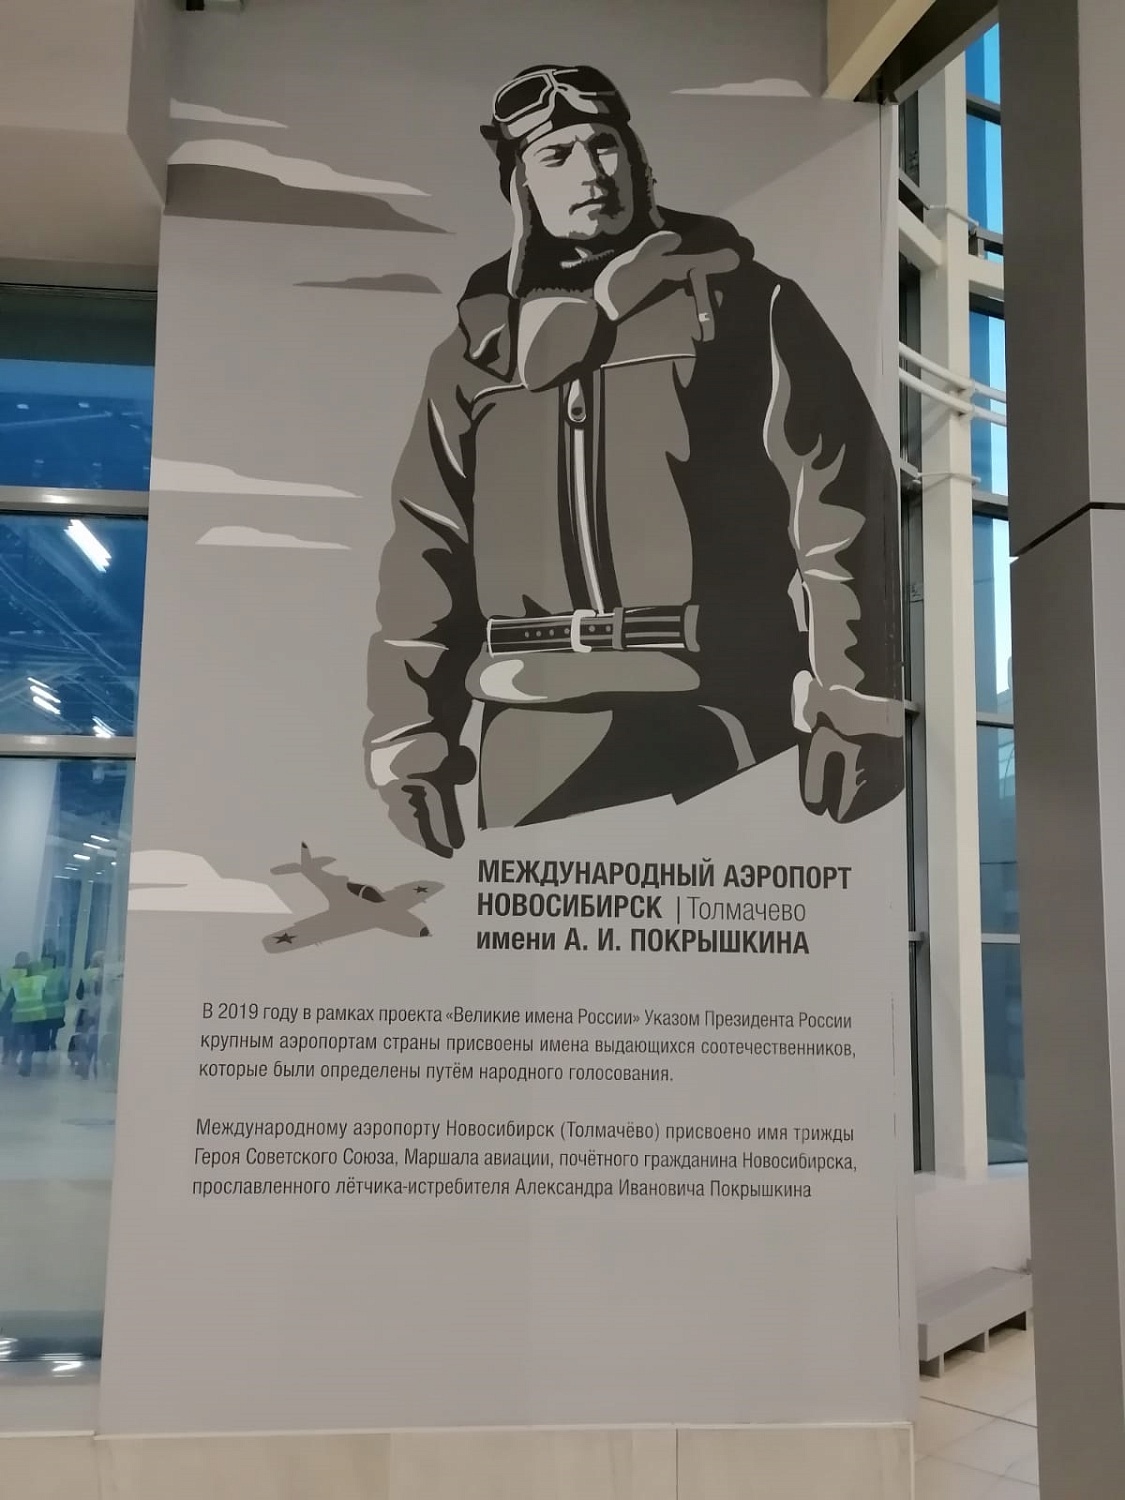 Элемент внутреннего интерьера Новосибирского международного аэропорта